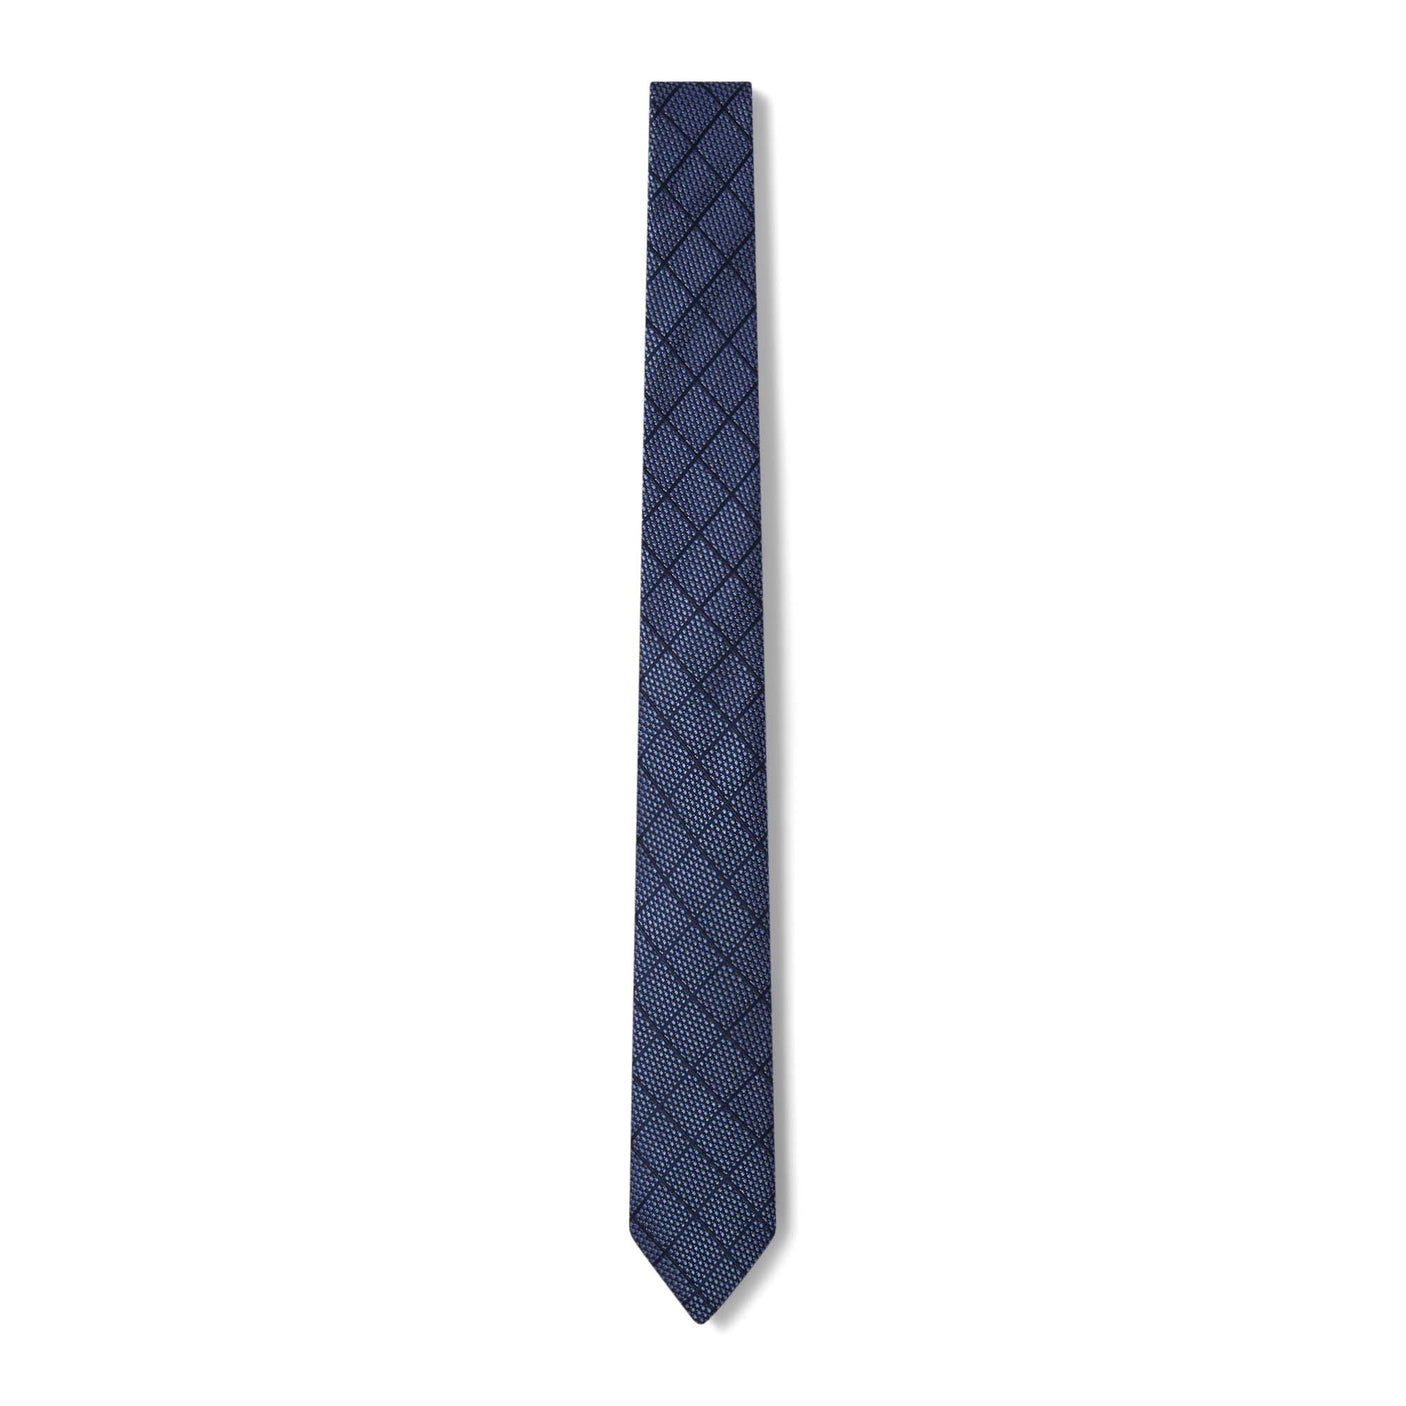 Cravate à carreaux bleu marine